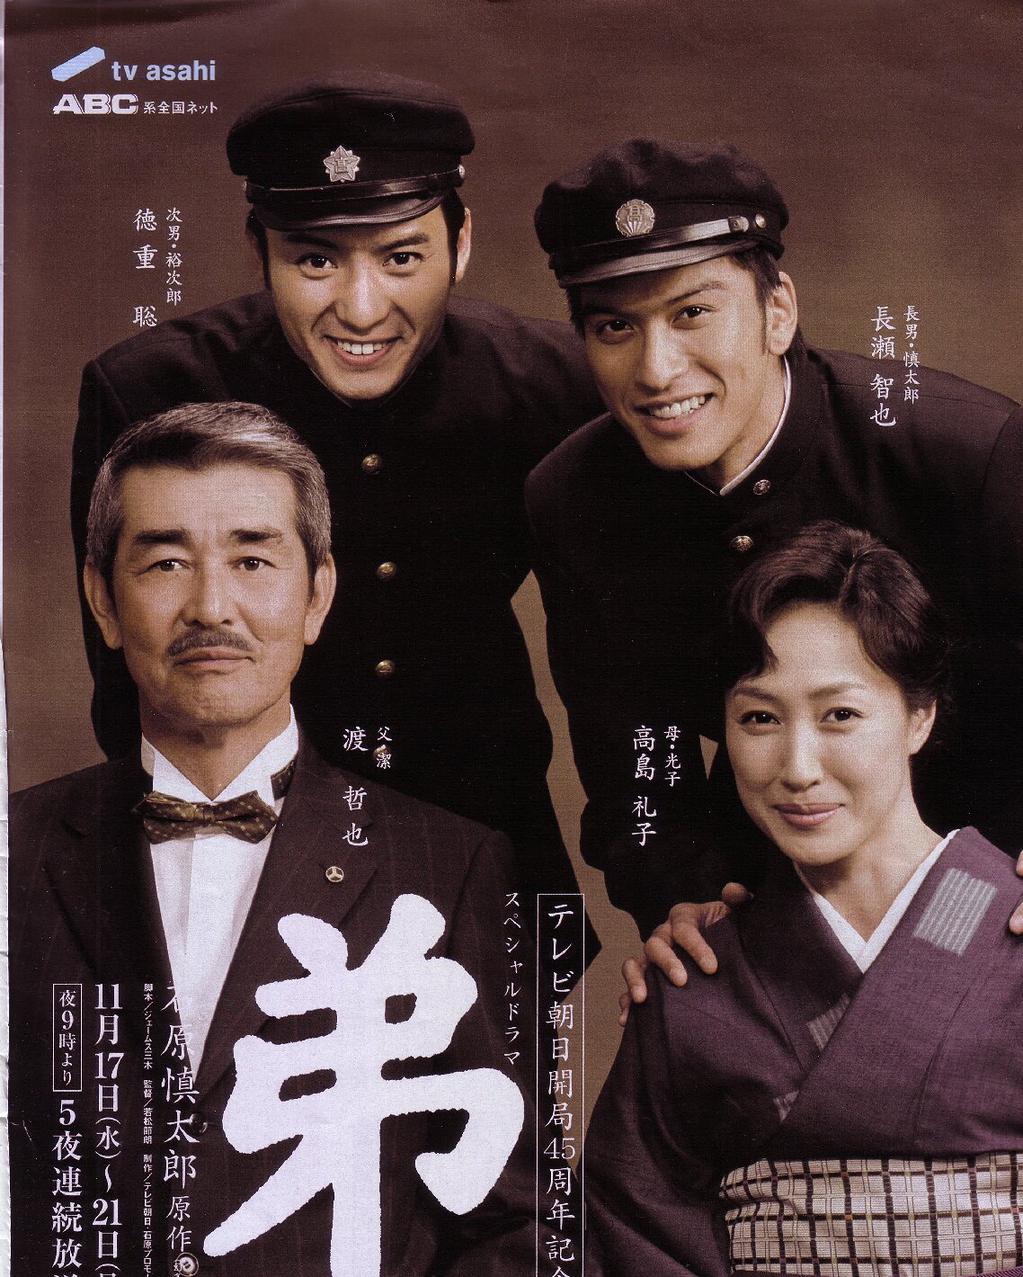 弟(2004年日本電視劇《弟》)